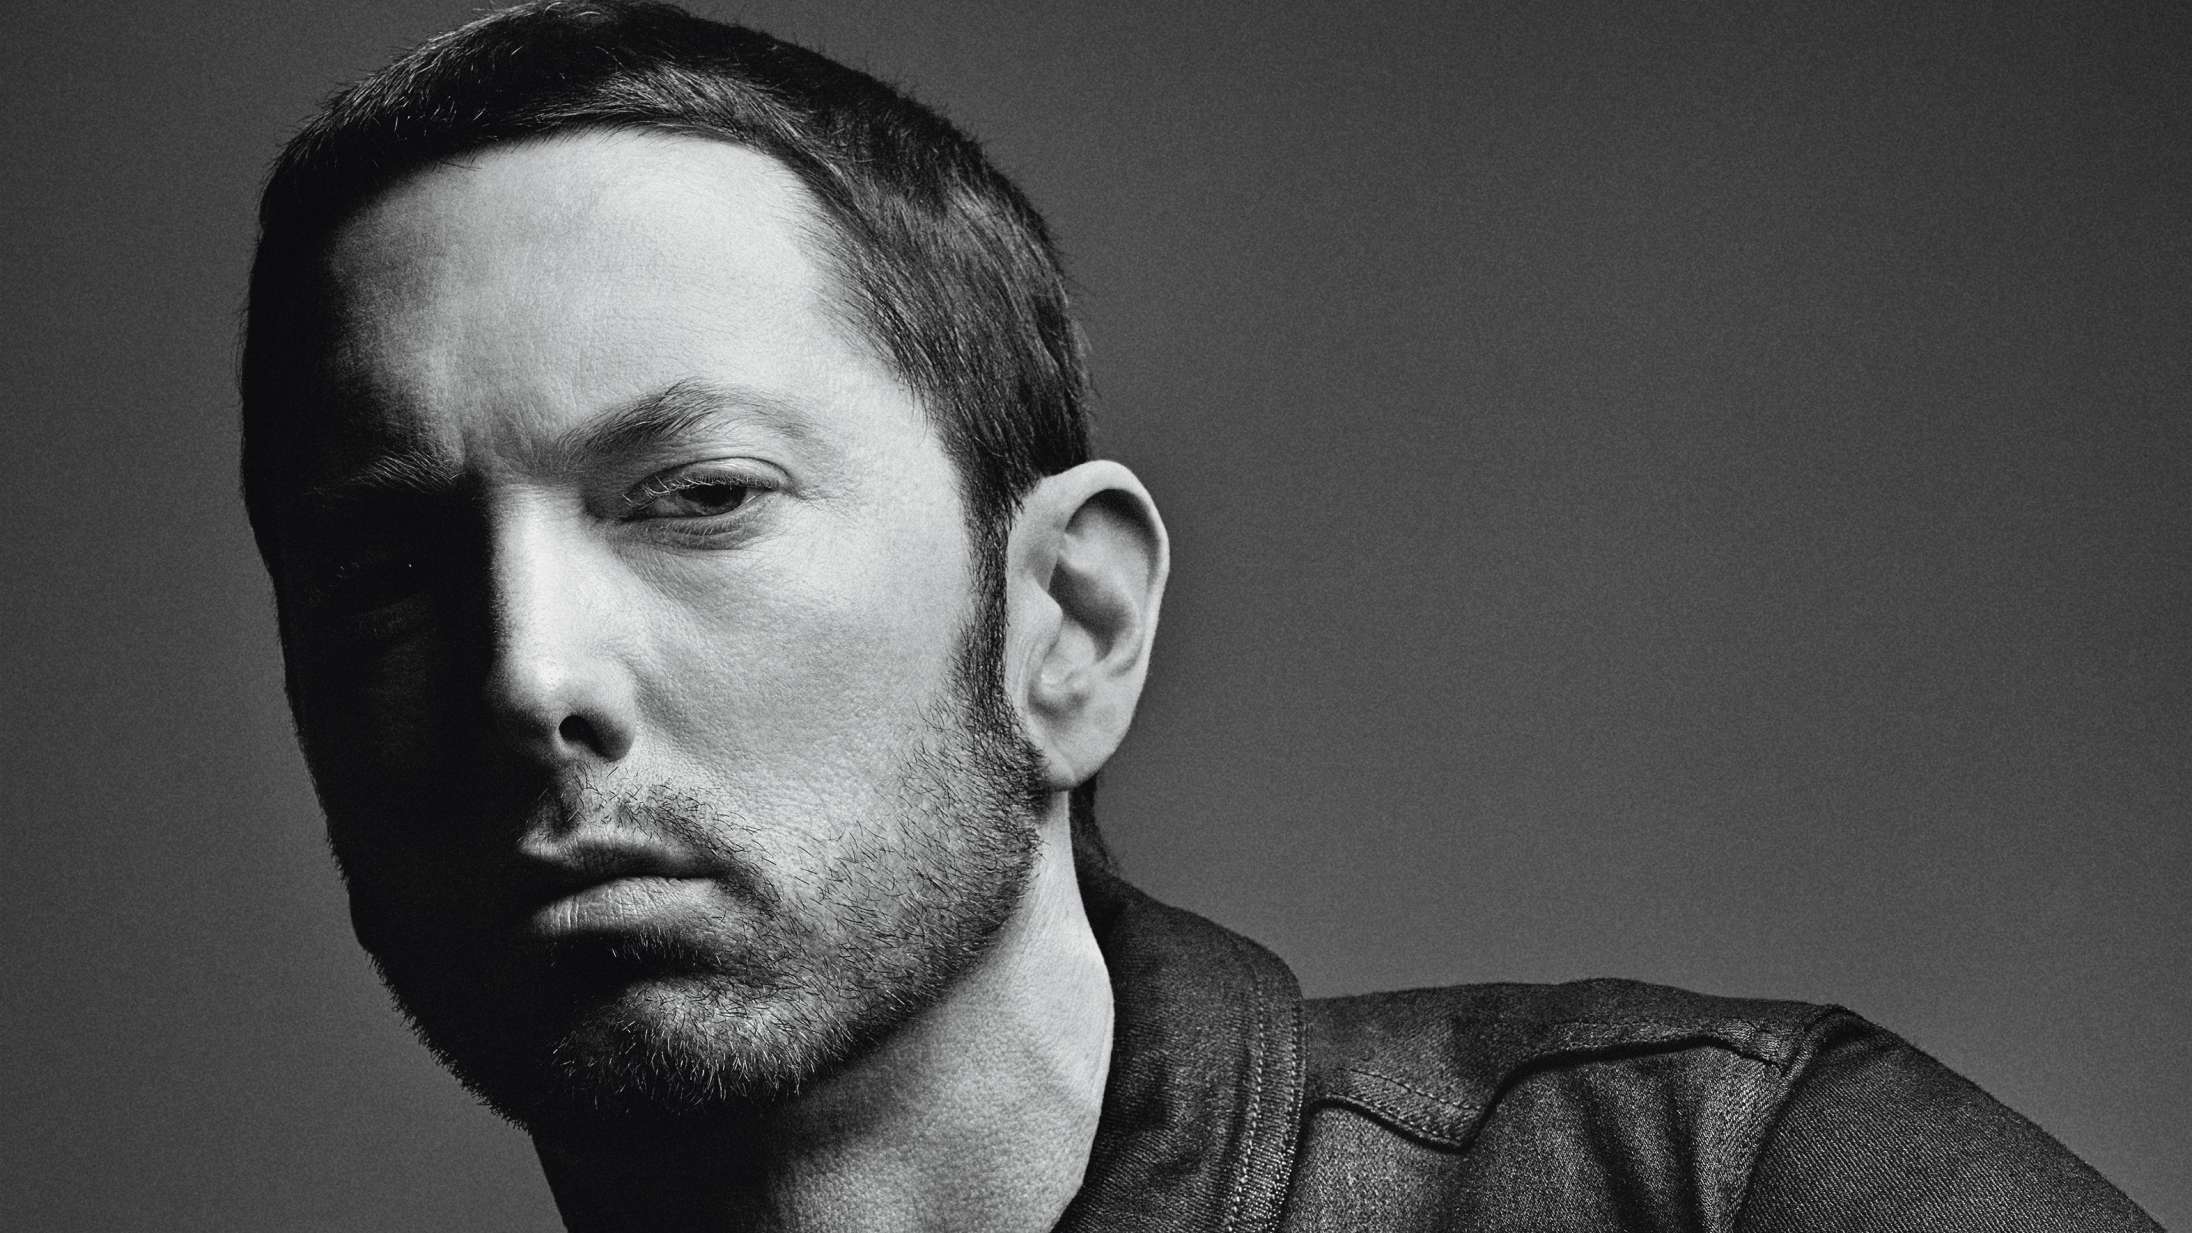 Mand brød ind hos Eminem med intention om at dræbe, siger politiet